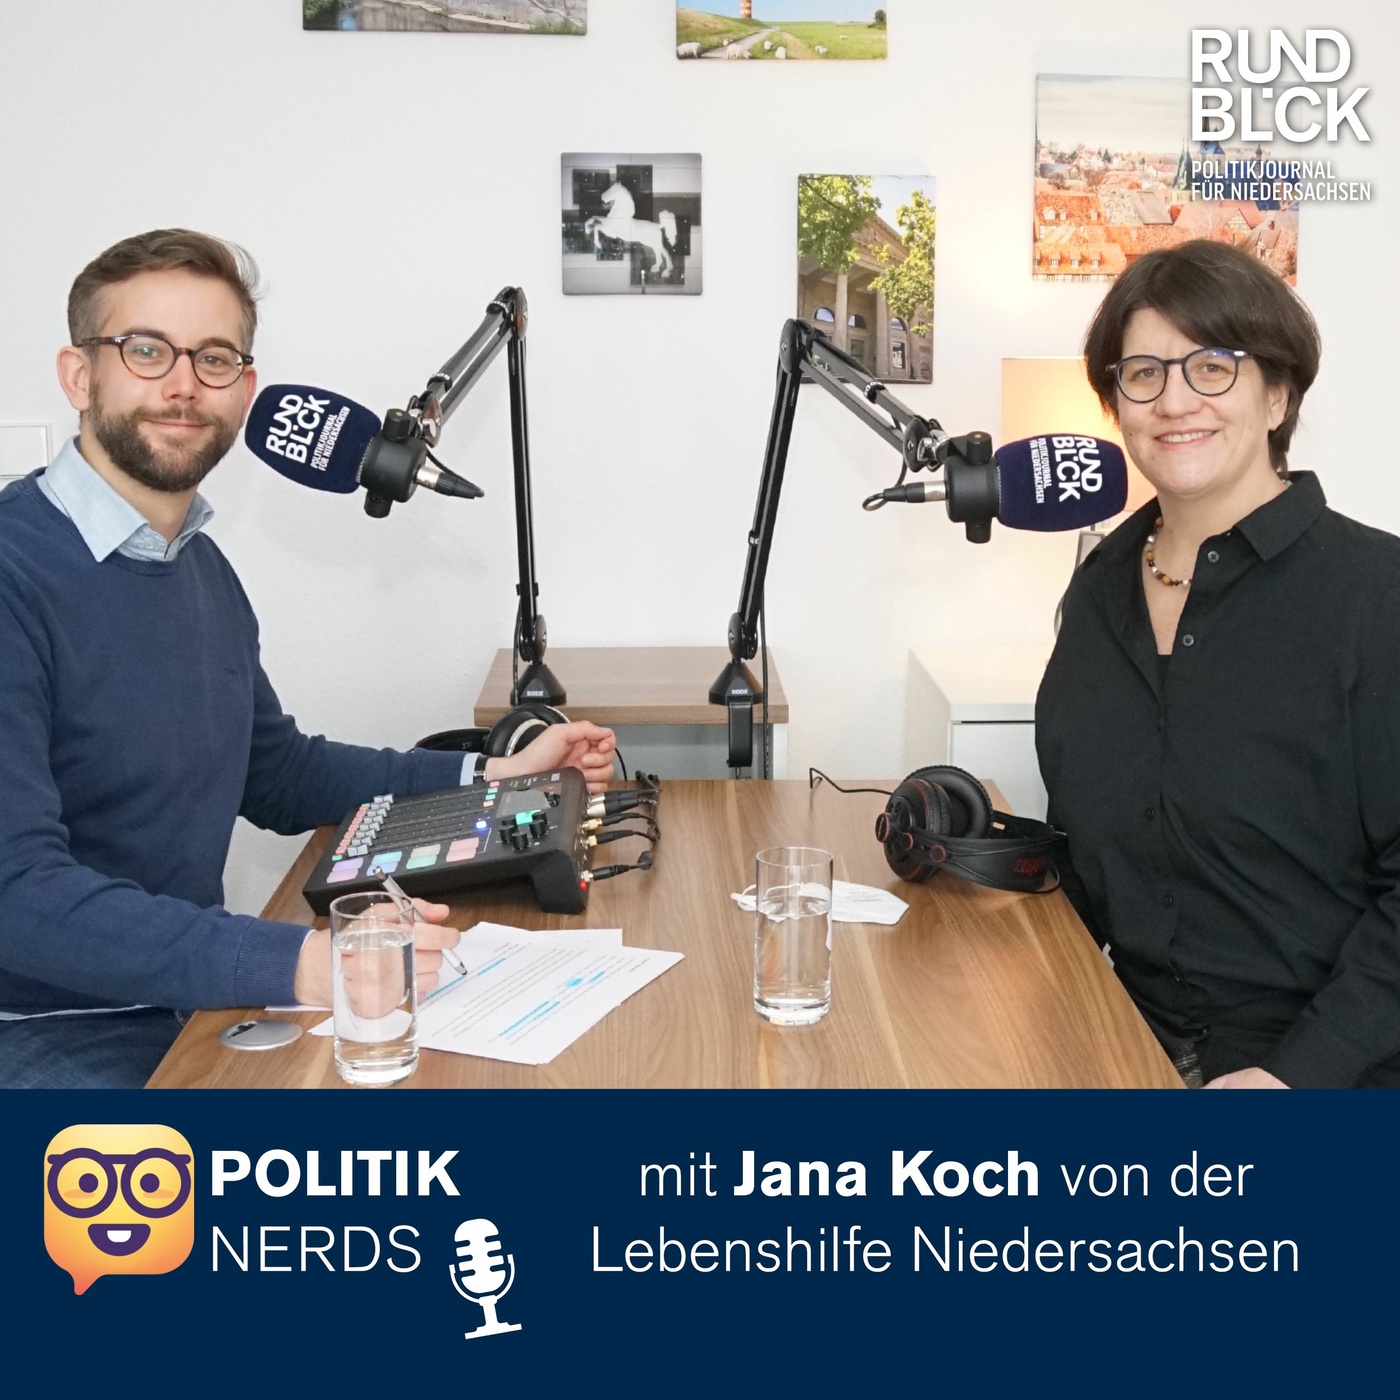 Politiknerds-Podcast mit Jana Koch von der Lebenshilfe Niedersachsen